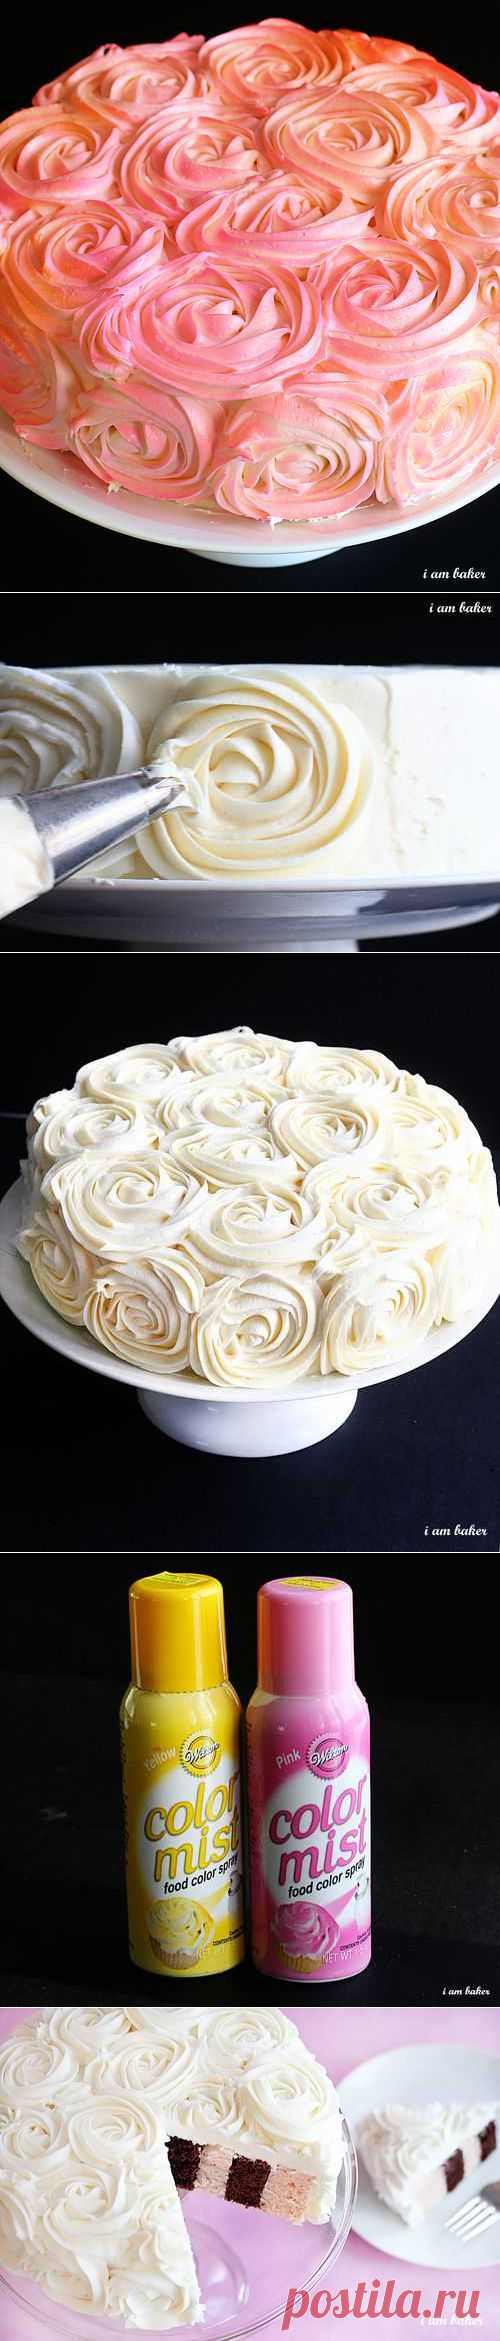 (+1) сообщ - Как украсить торт розами без лишних хлопот | ВКУСНО ПОЕДИМ!